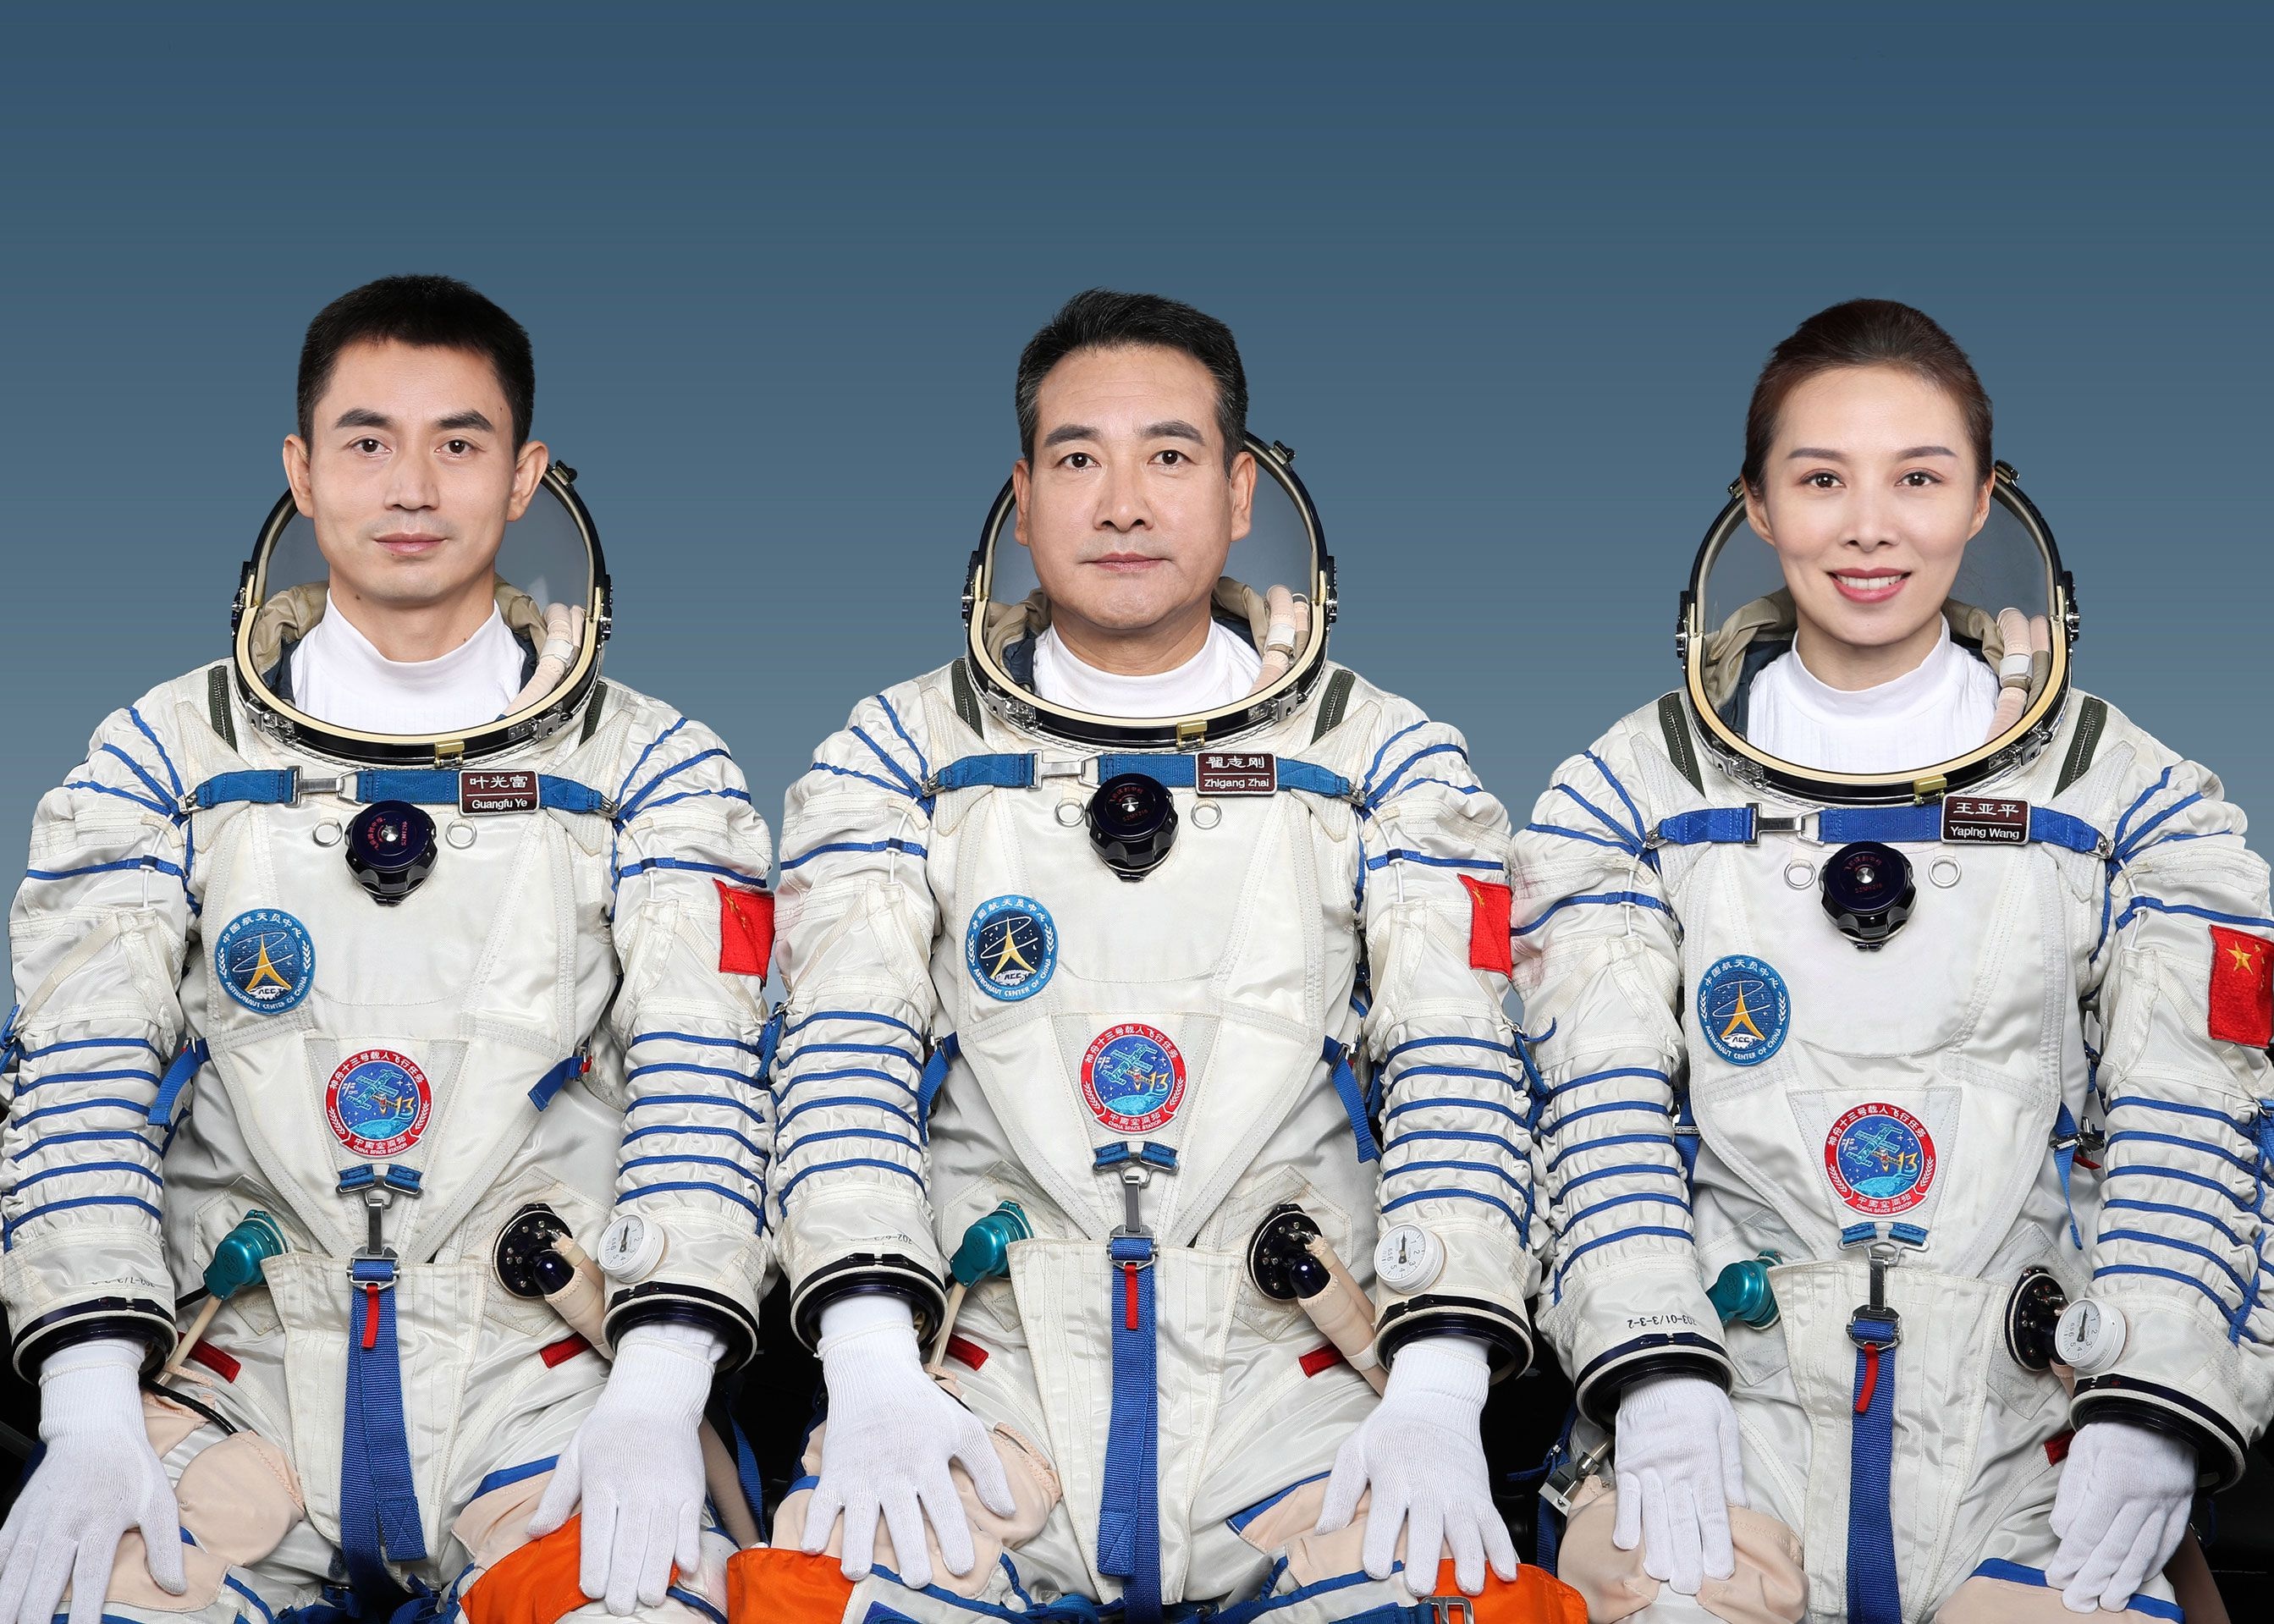 中国航天员|执行神舟十三号载人飞行任务的航天员乘组确定